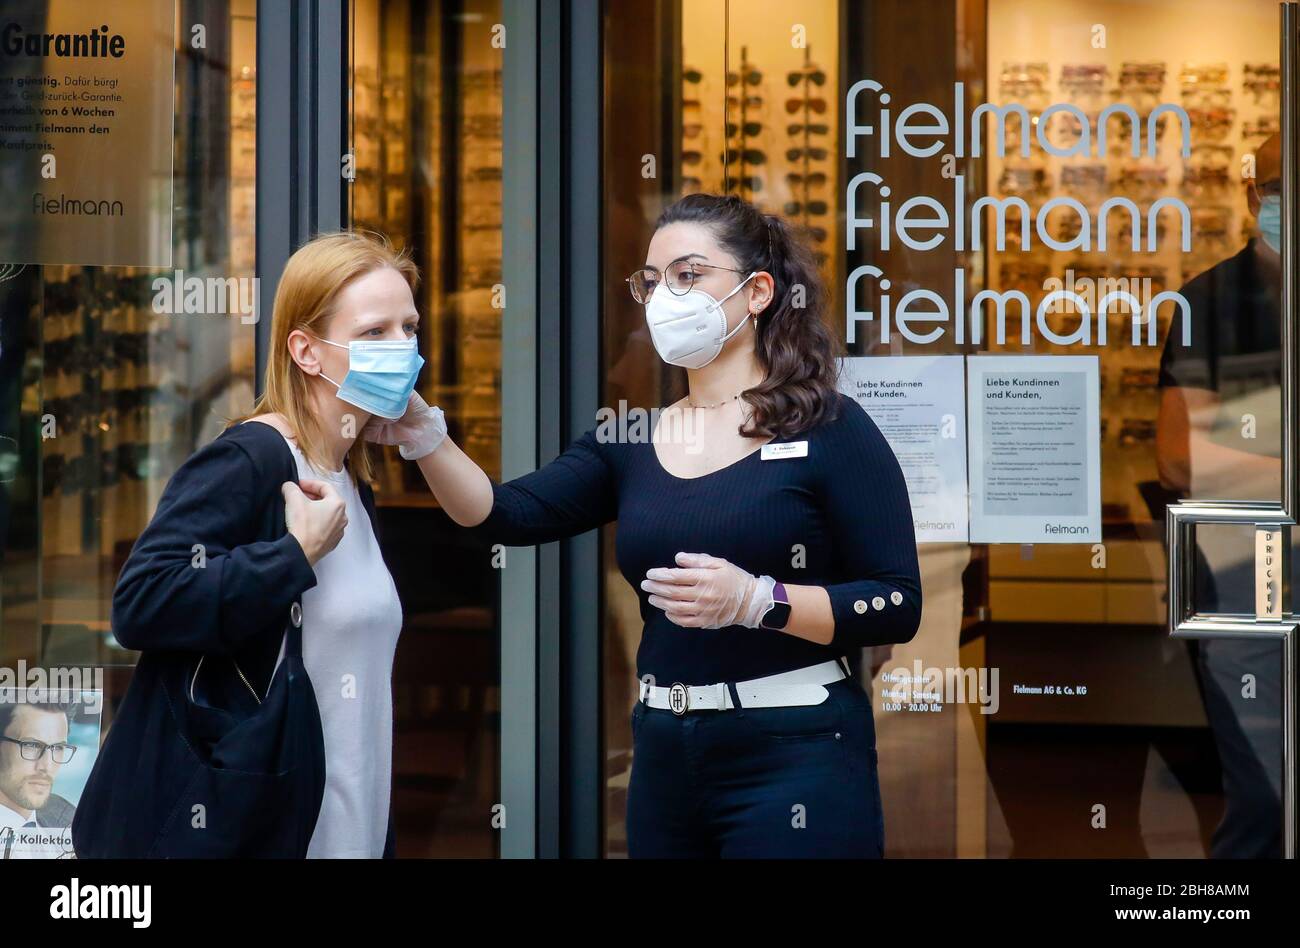 24.04.2020, Essen, Nordrhein-Westfalen - ab Montag, 27. April, gilt in NRW beim Einkaufen und im Bus die Pflicht, eine Maske zu tragen Stockfoto